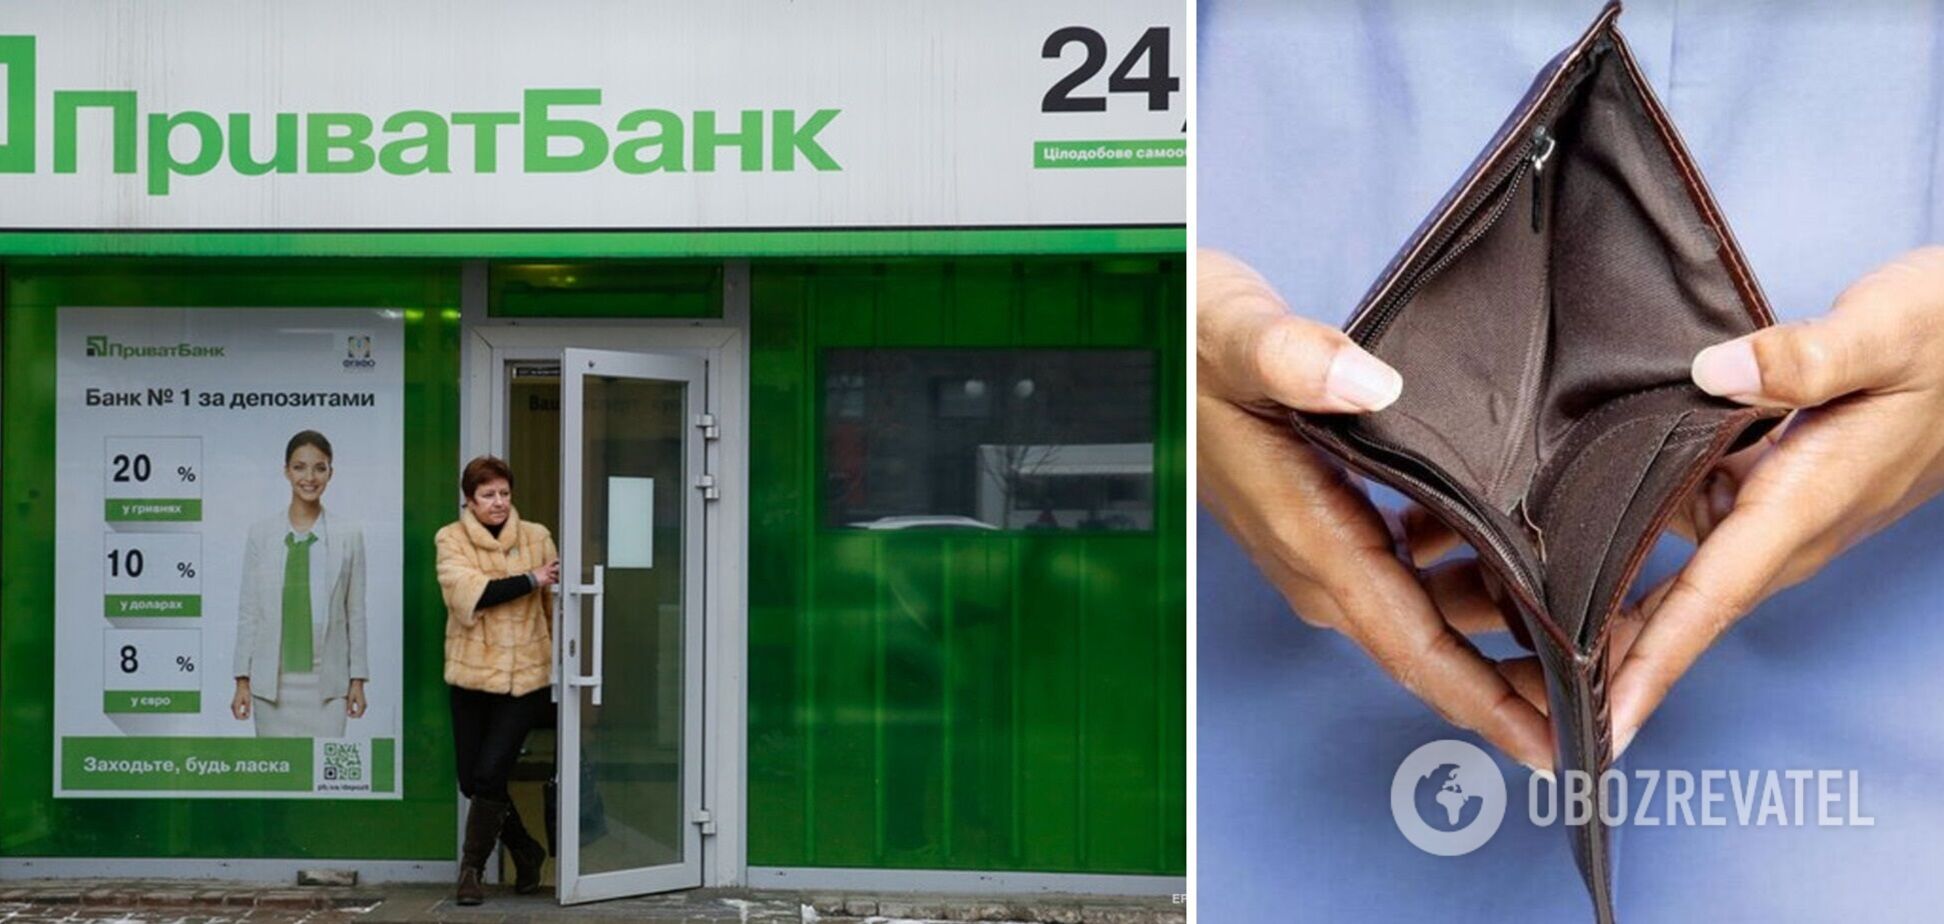 У клиентки ПриватБанка исчезли с карты 13 тыс. грн